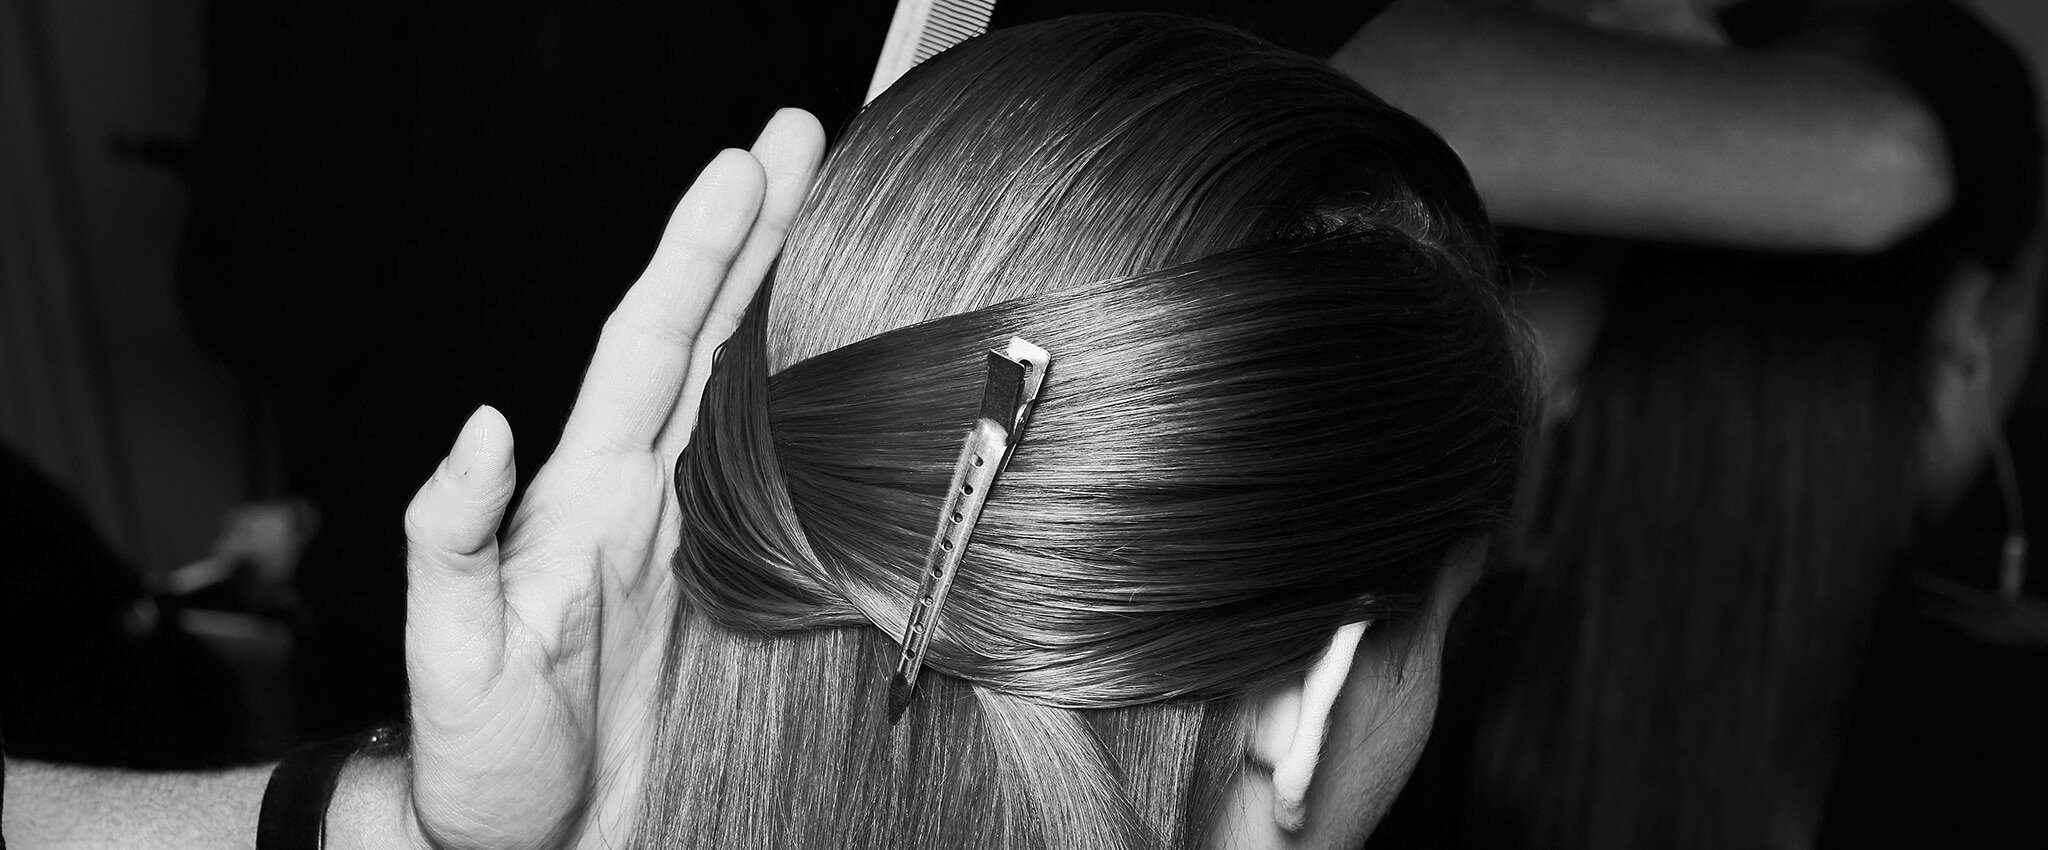 Fekete-fehér, közeli kép egy modell fejéről oldalnézetben, hajának egy része hajsütővasba fogva, a stylist keze éppen csak belóg.